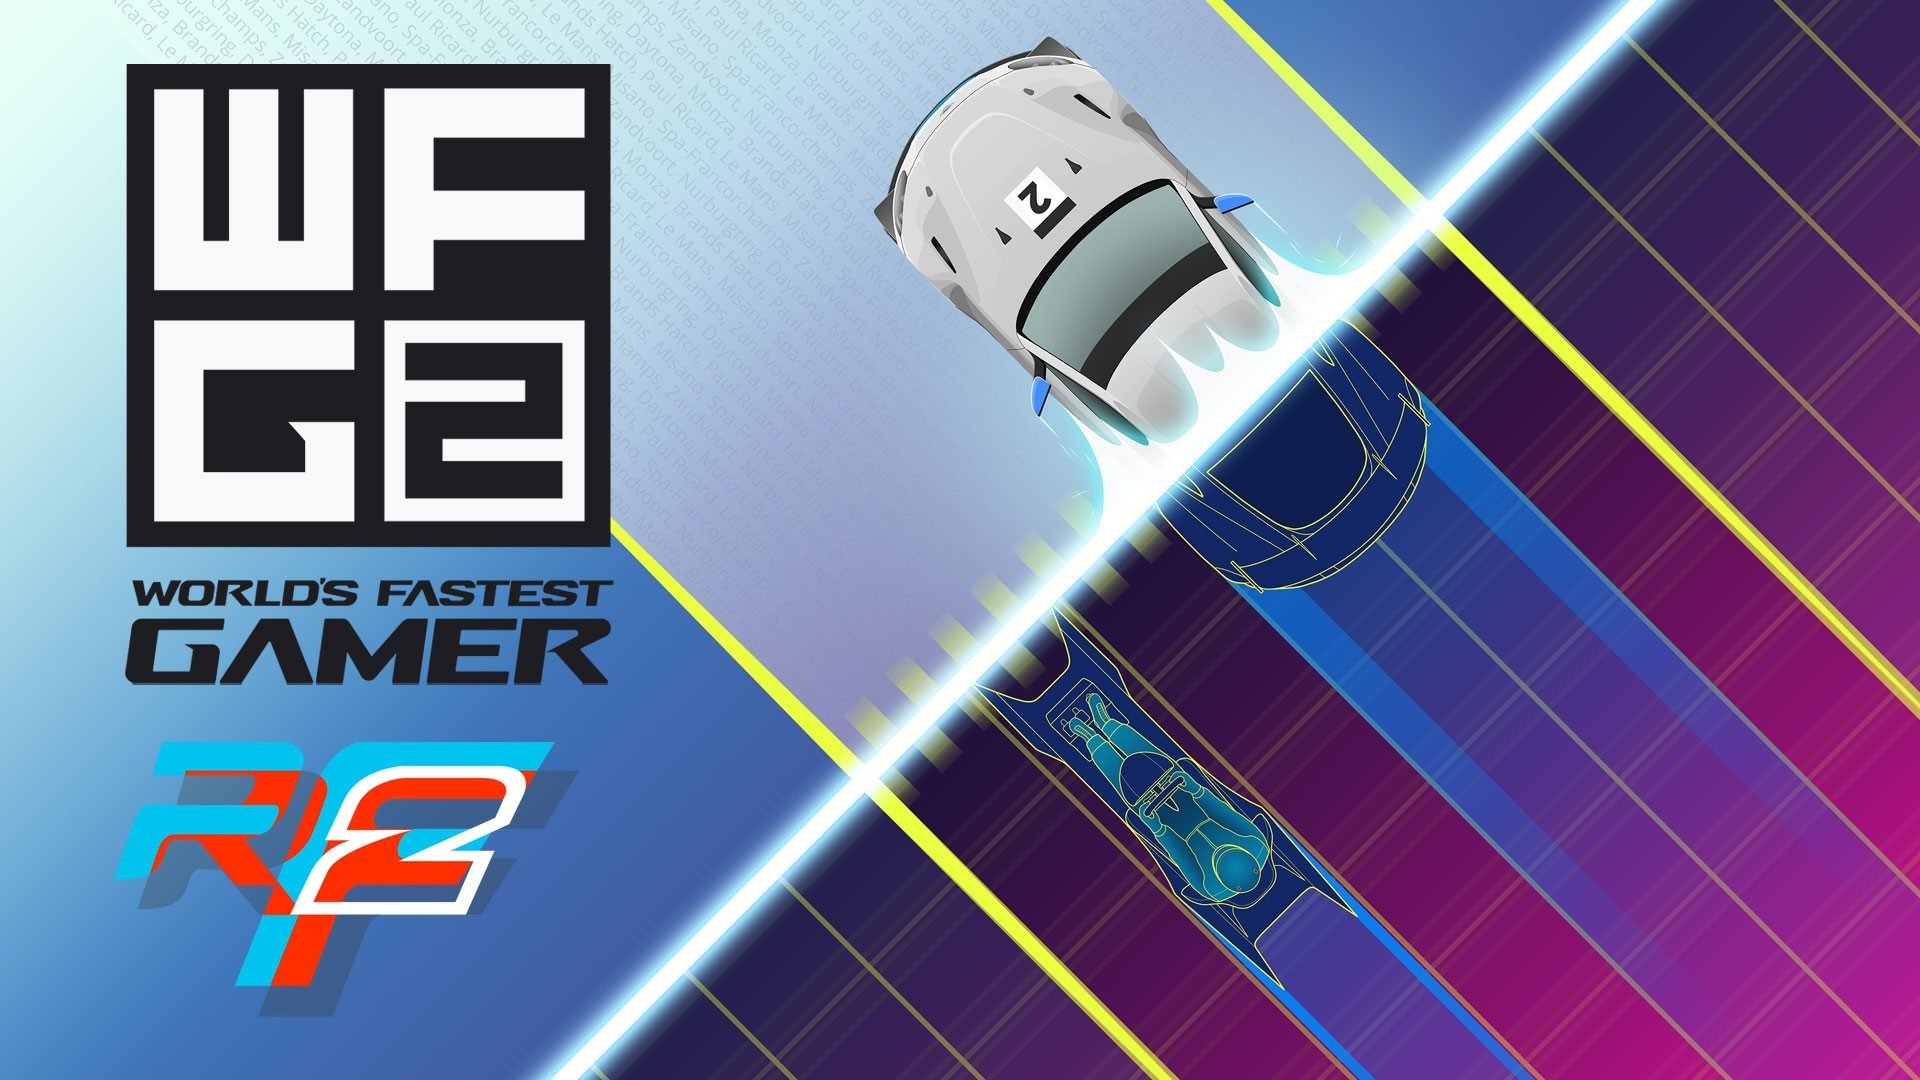 More information about "World’s Fastest Gamer: via alla qualificazione con rFactor 2"